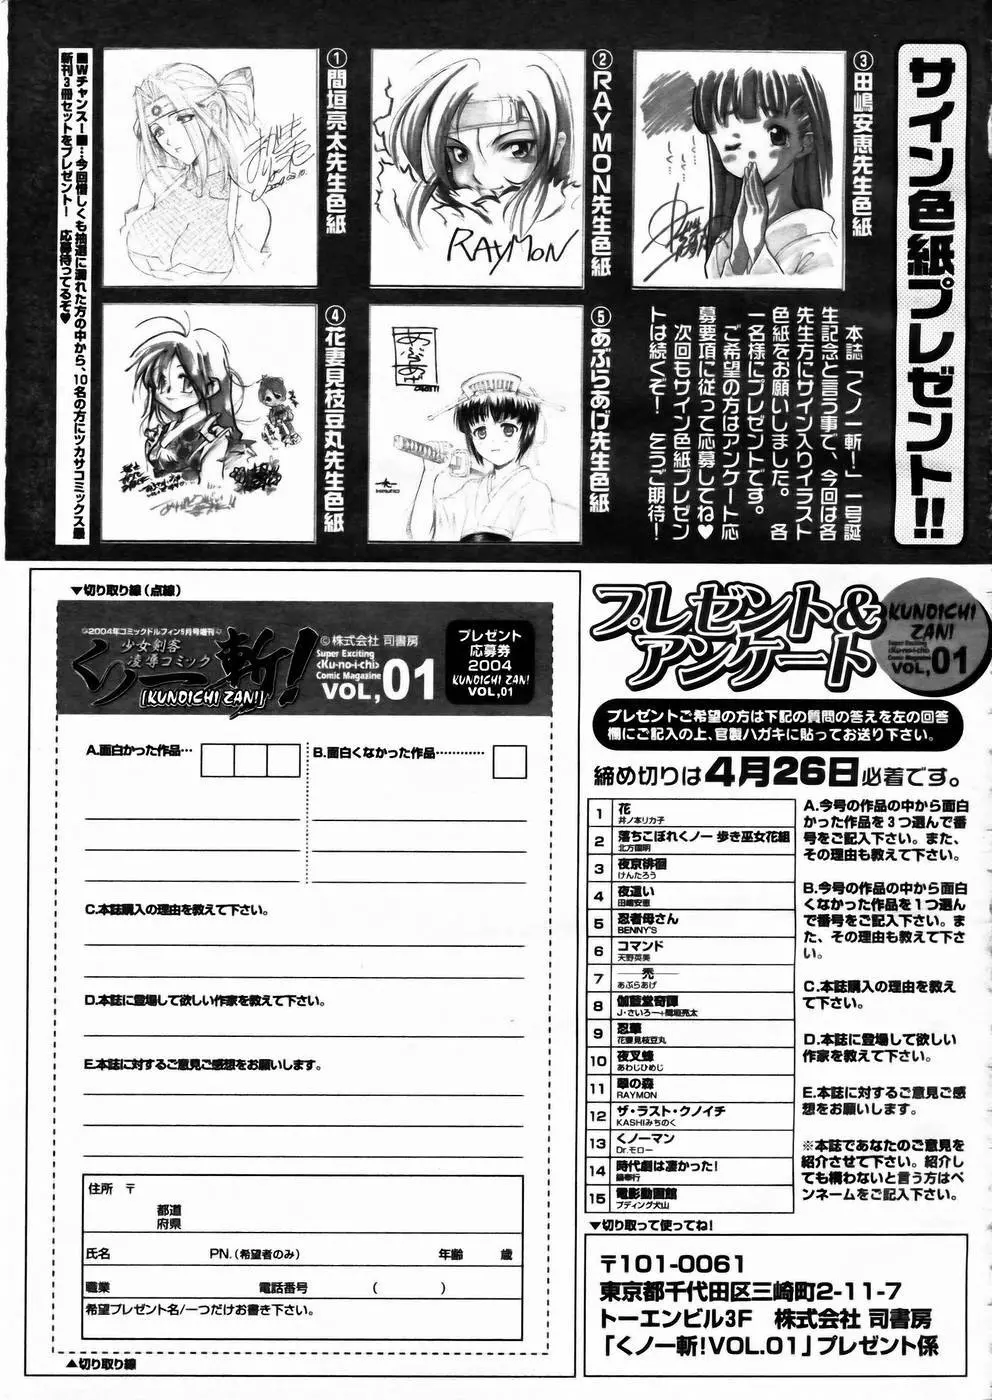 少女剣客凌辱コミック Vol.01 くノ一斬! 192ページ